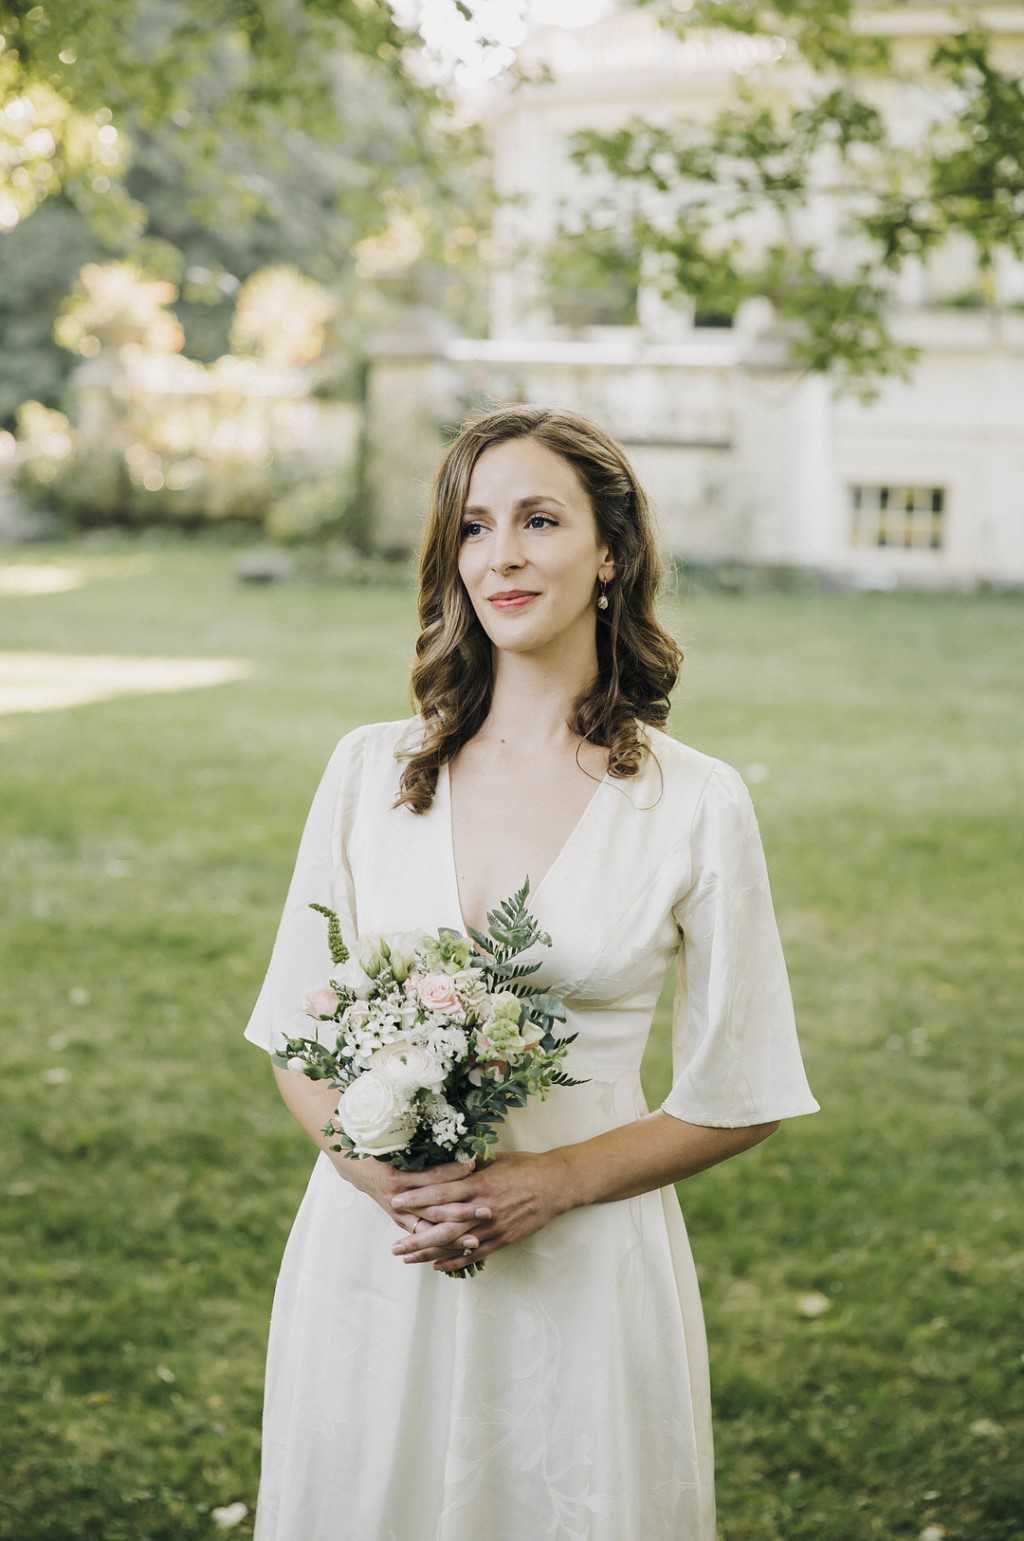 Braut Standesamt Outfit: Weißes Hochzeitskleid mit Standesamtstrauß